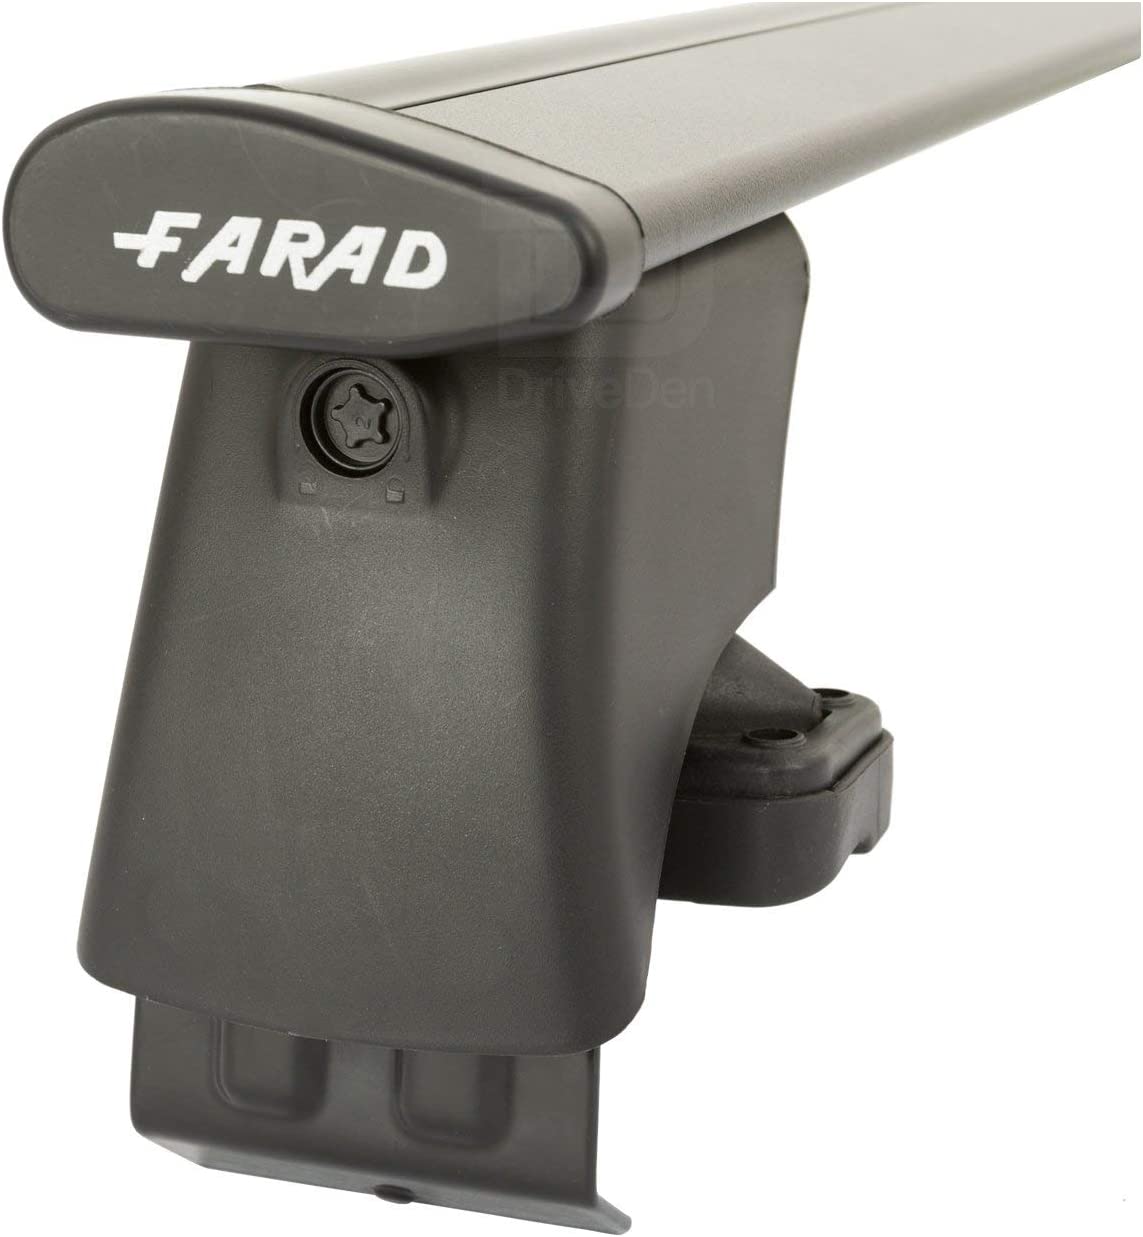 FARAD-Kit H2 per barre portatutto - Hyundai I 10 2008-2013 (senza corrimano)